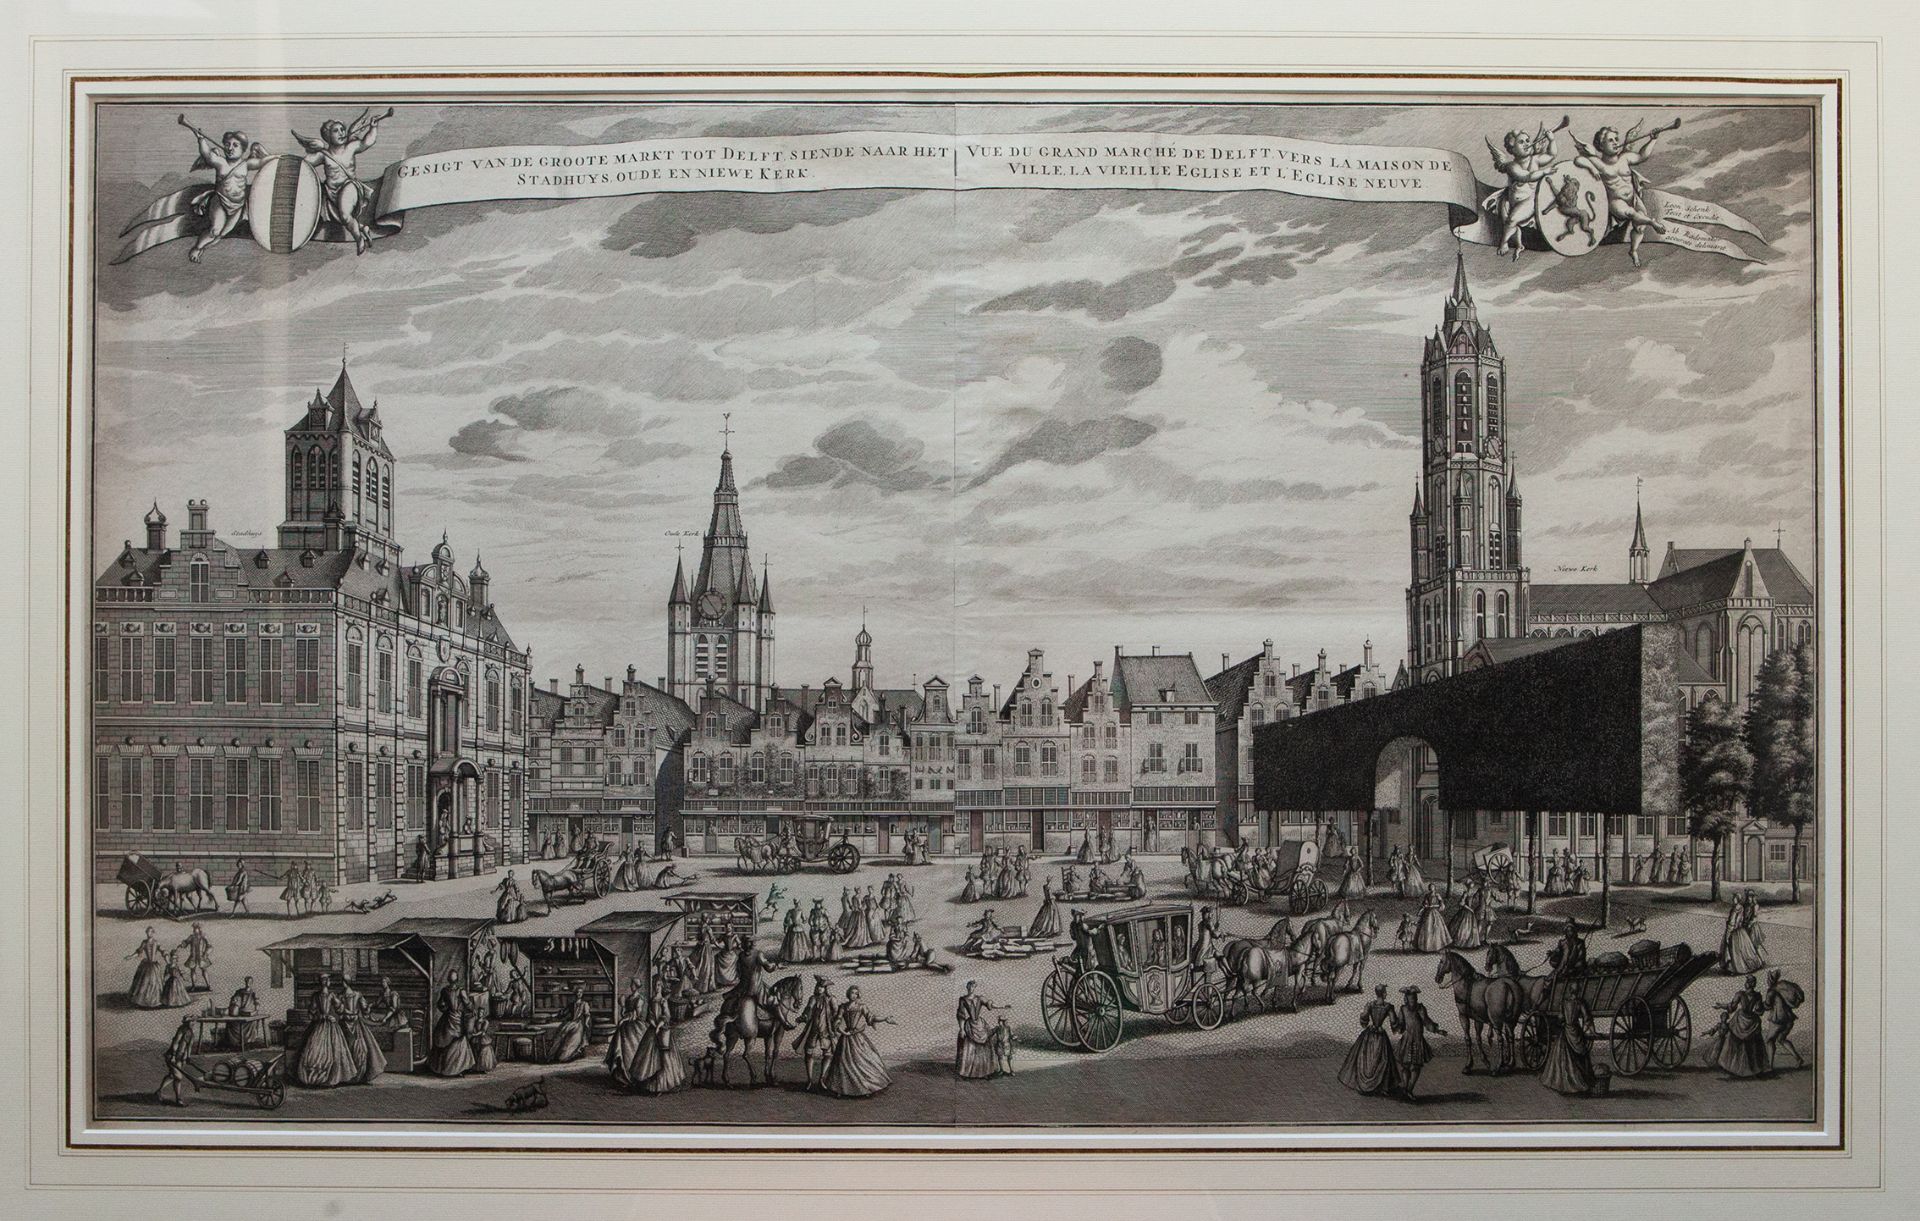 LOW COUNTRIES -- DELFT -- "GESIGT van de Groote Markt tot Delft, siende naar